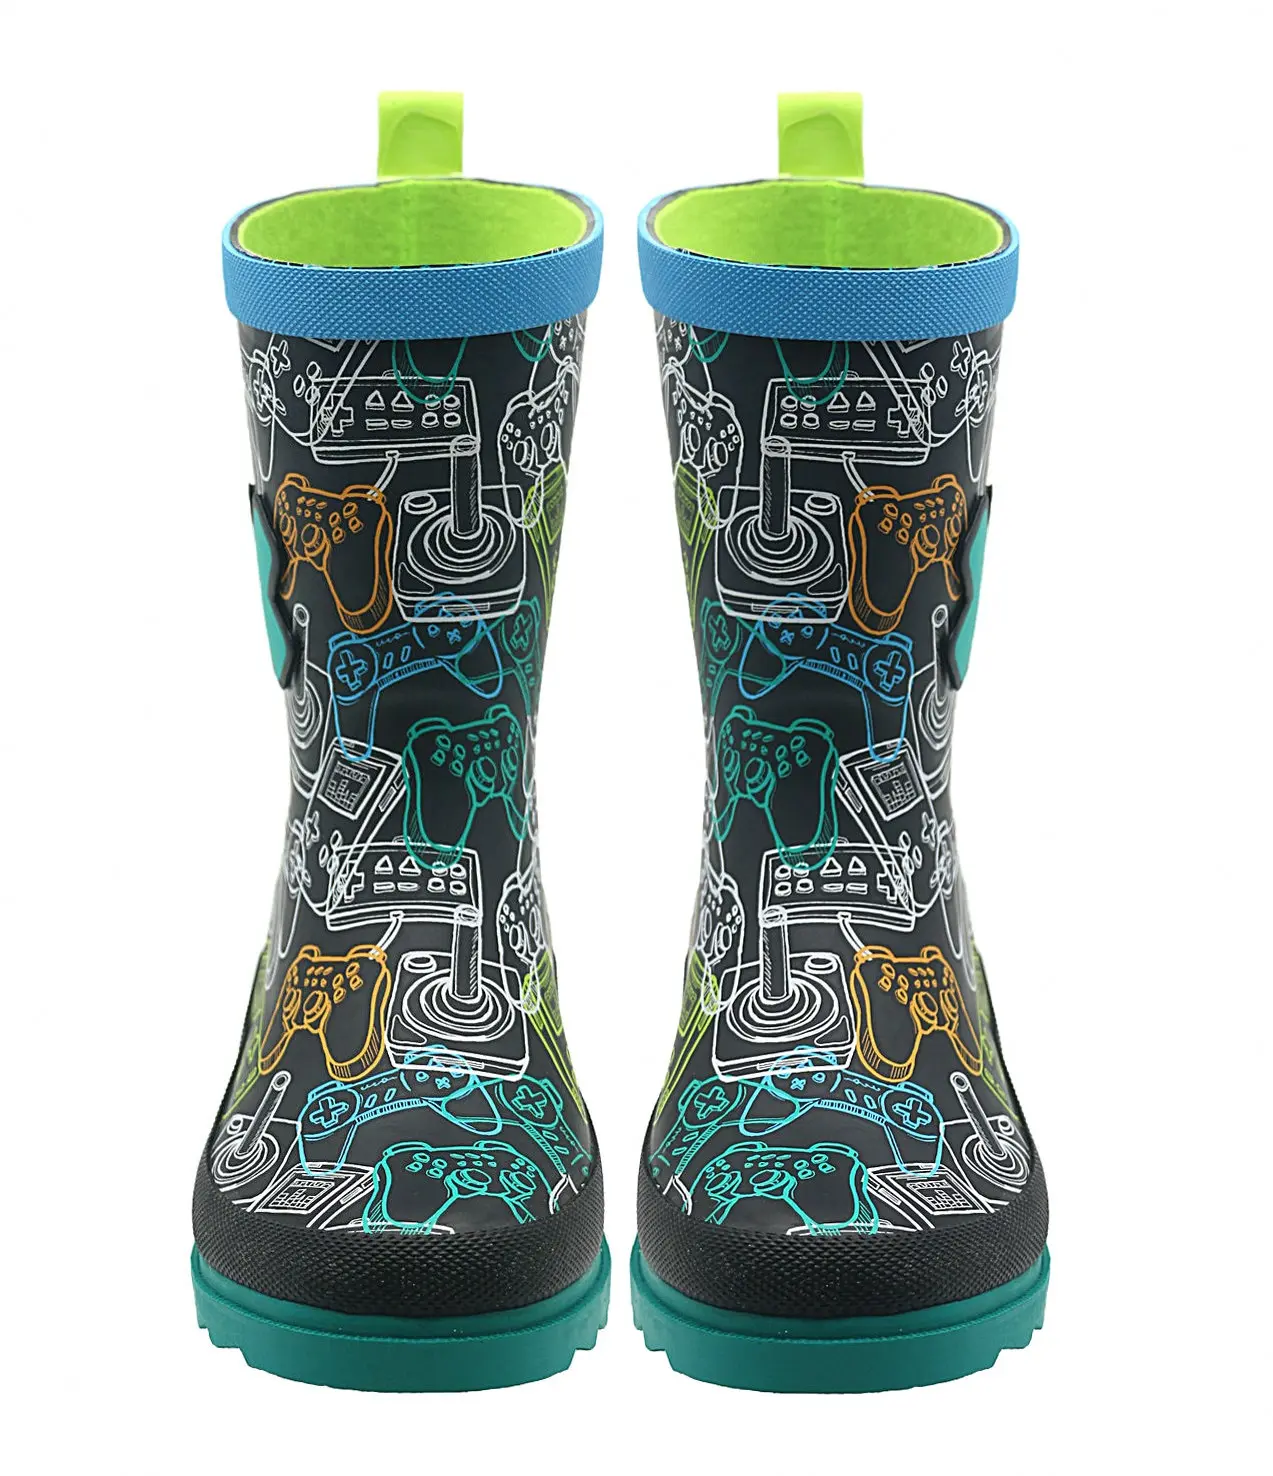 Sepatu bot hujan kustom untuk anak, sepatu bot hujan karet 3D motif lucu tahan air berkualitas tinggi